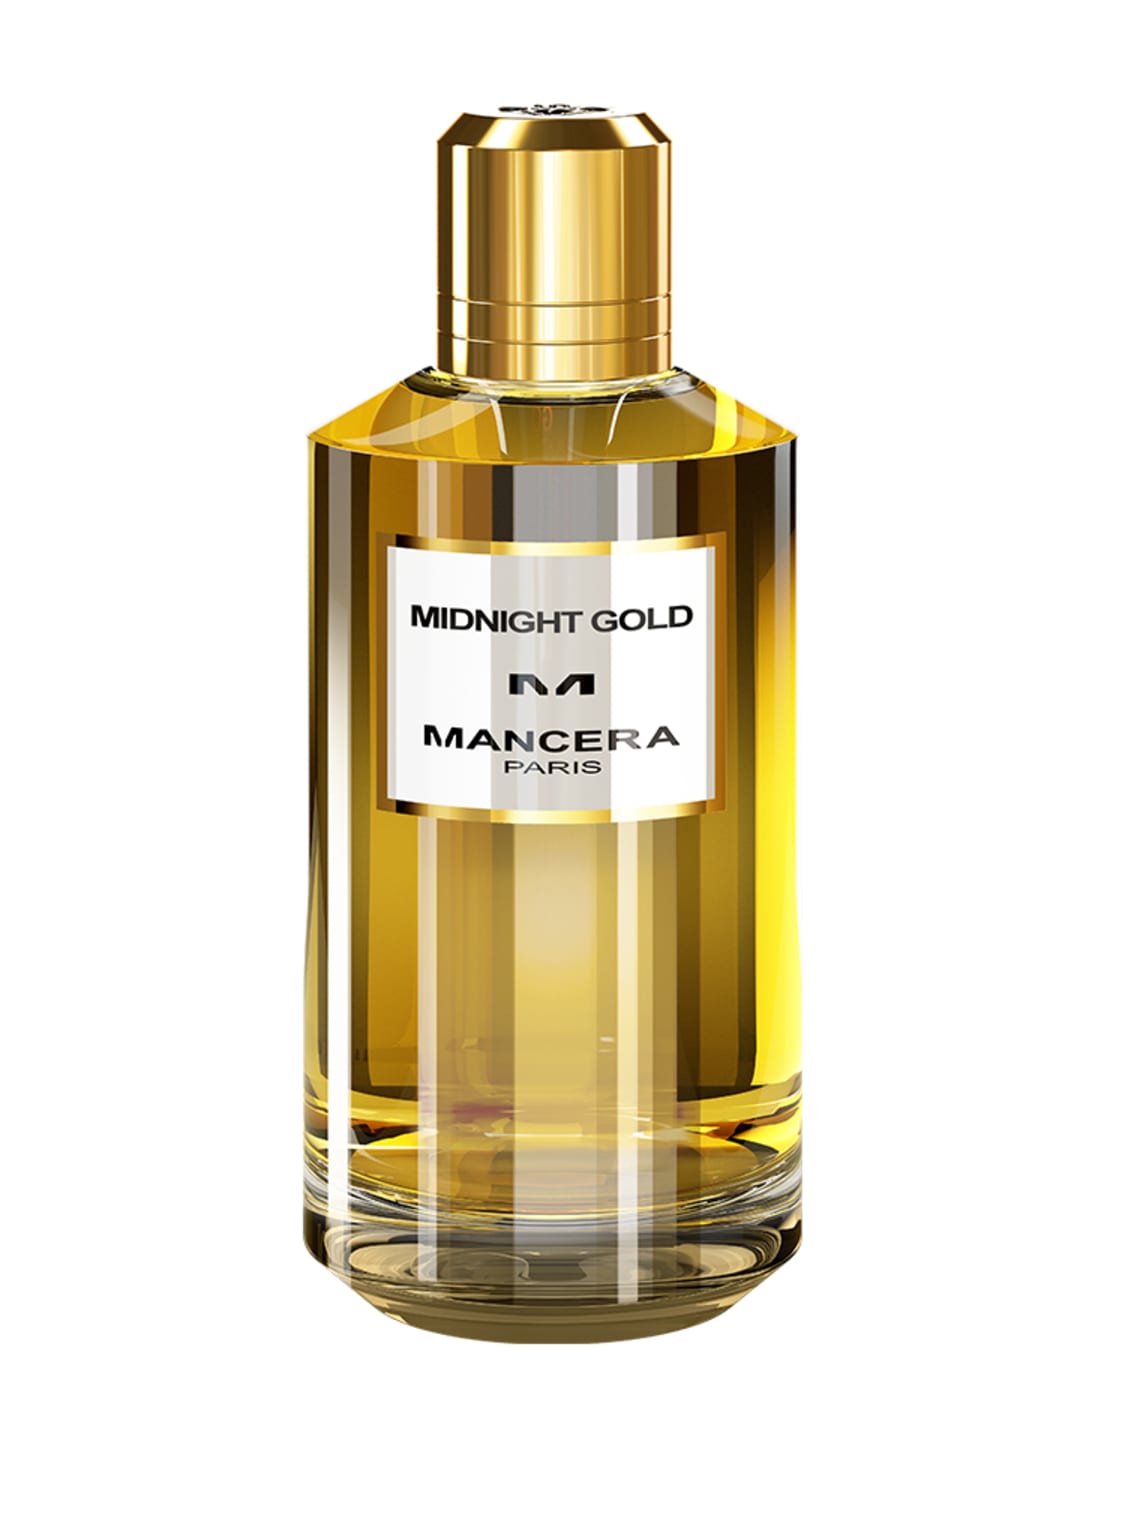 Mancera Midnight Gold Eau de Parfum 120 ml von MANCERA